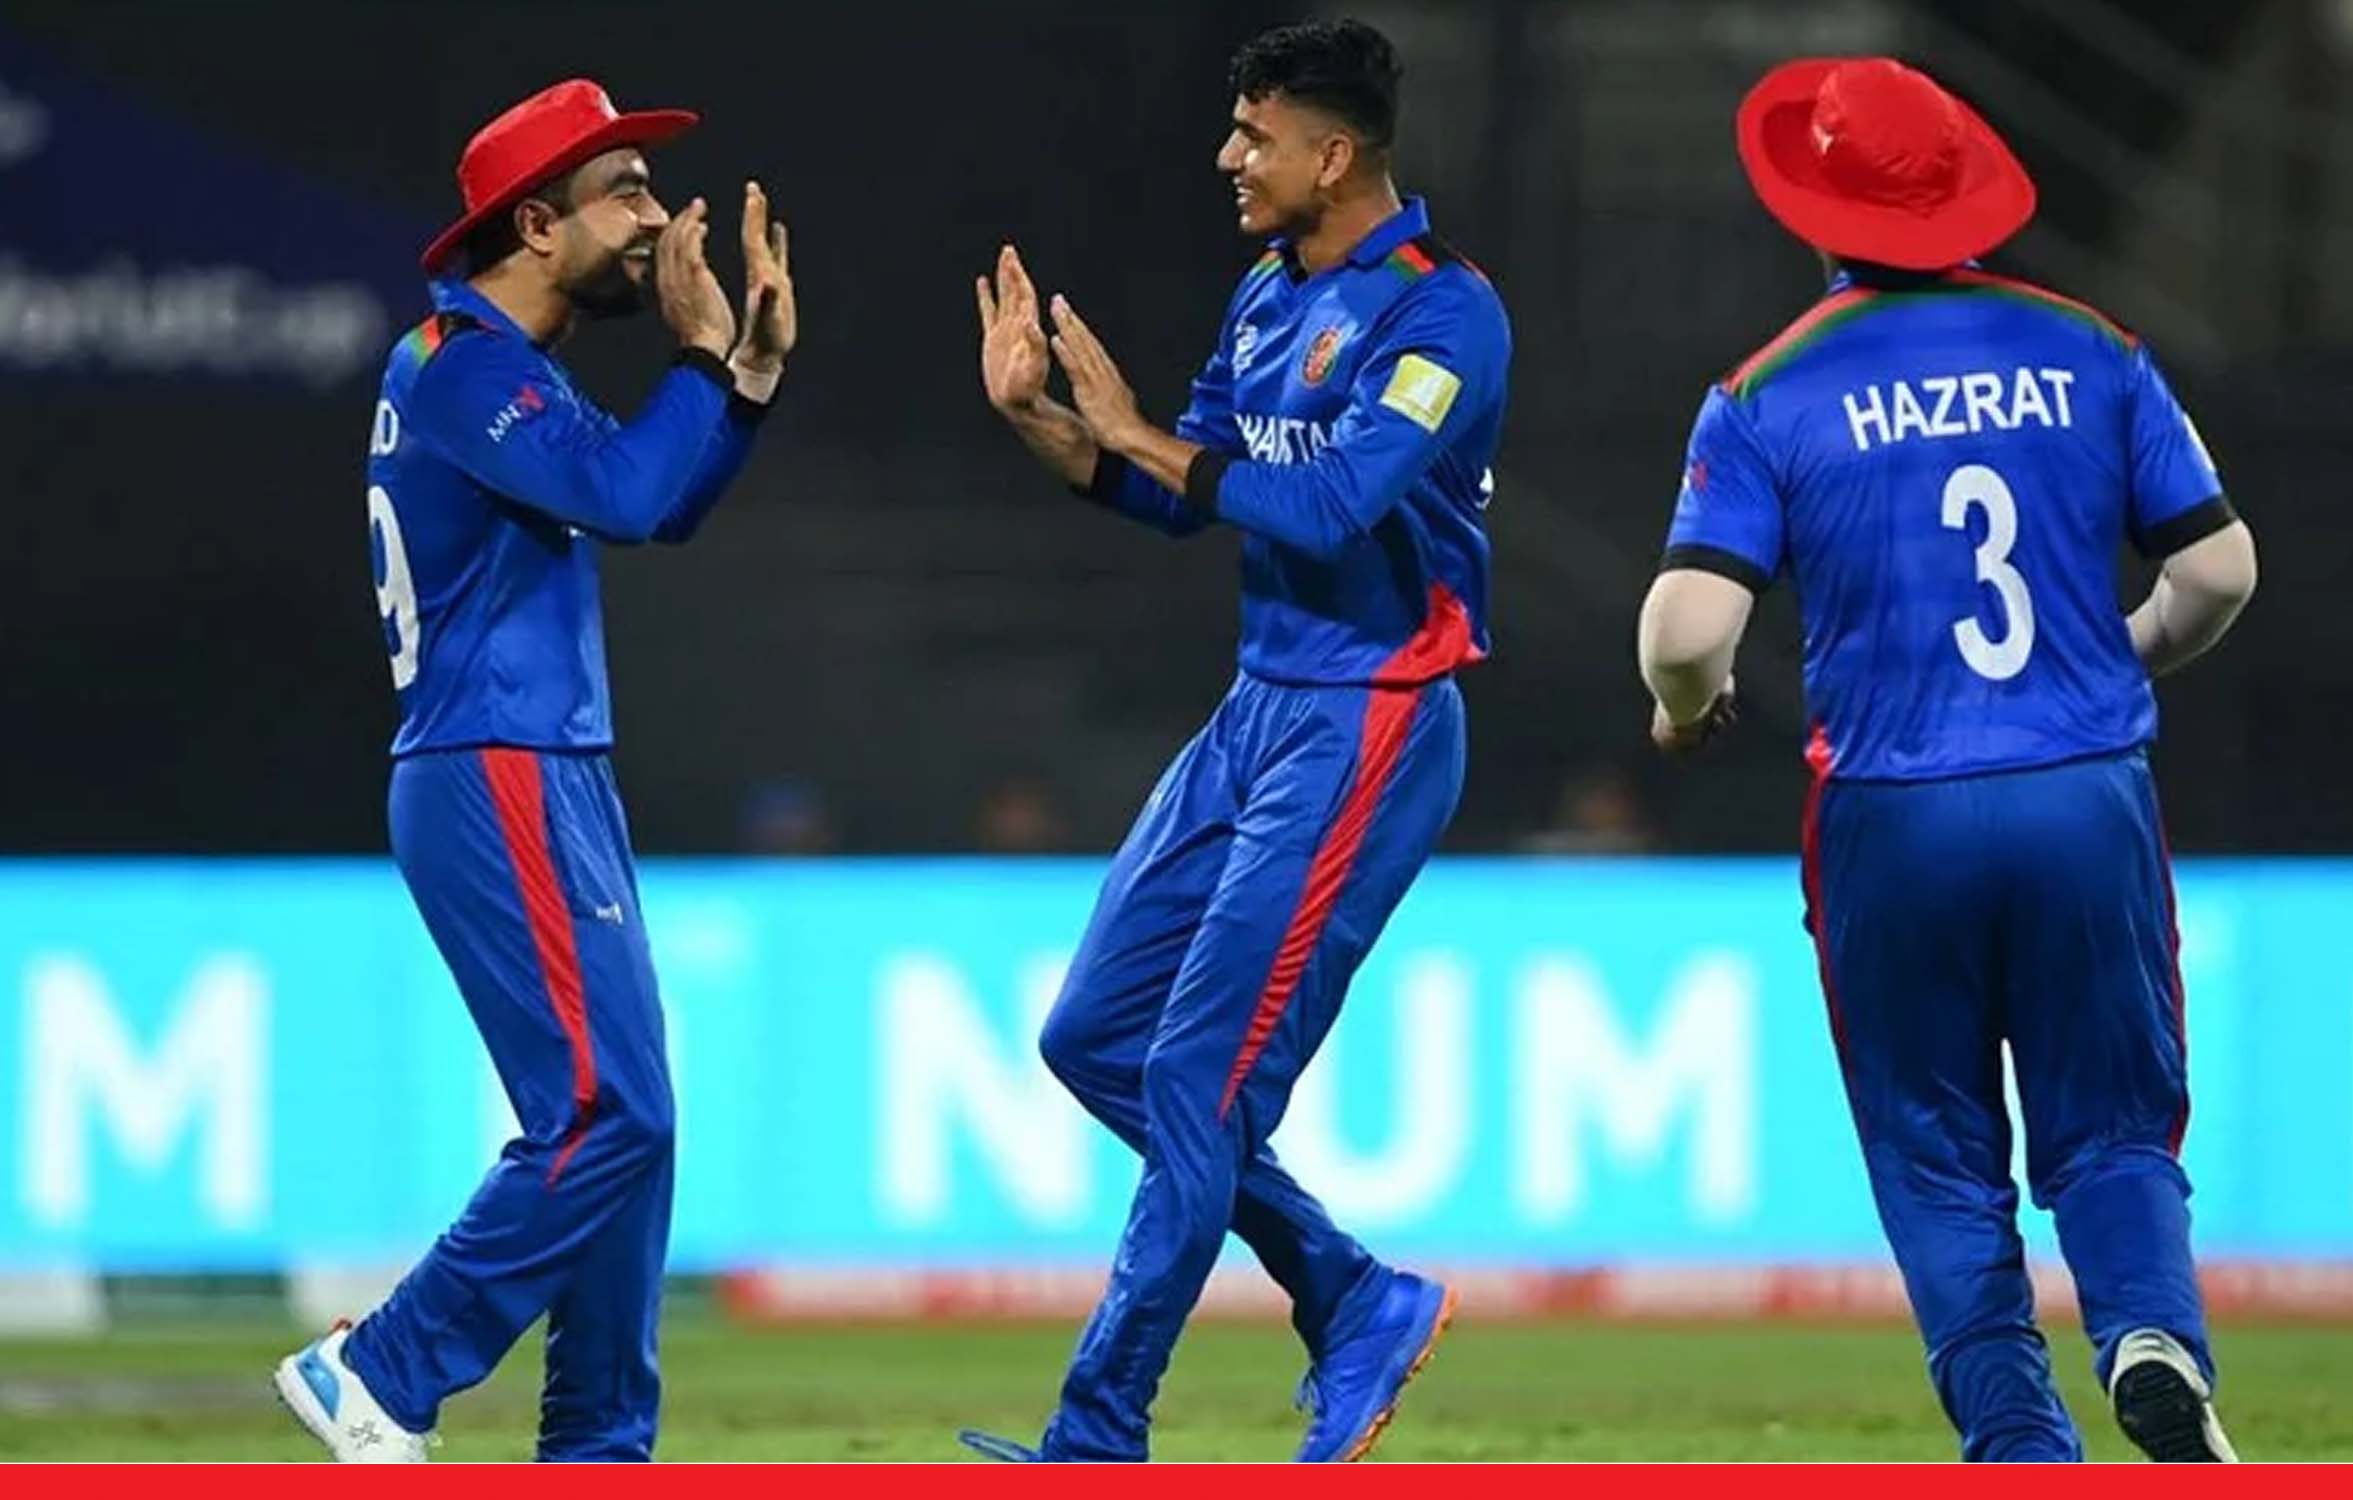 राशिद खान और मुजीब उर रहमान के दम पर अफगानिस्तान ने स्कॉटलैंड को 130 रन से हराया